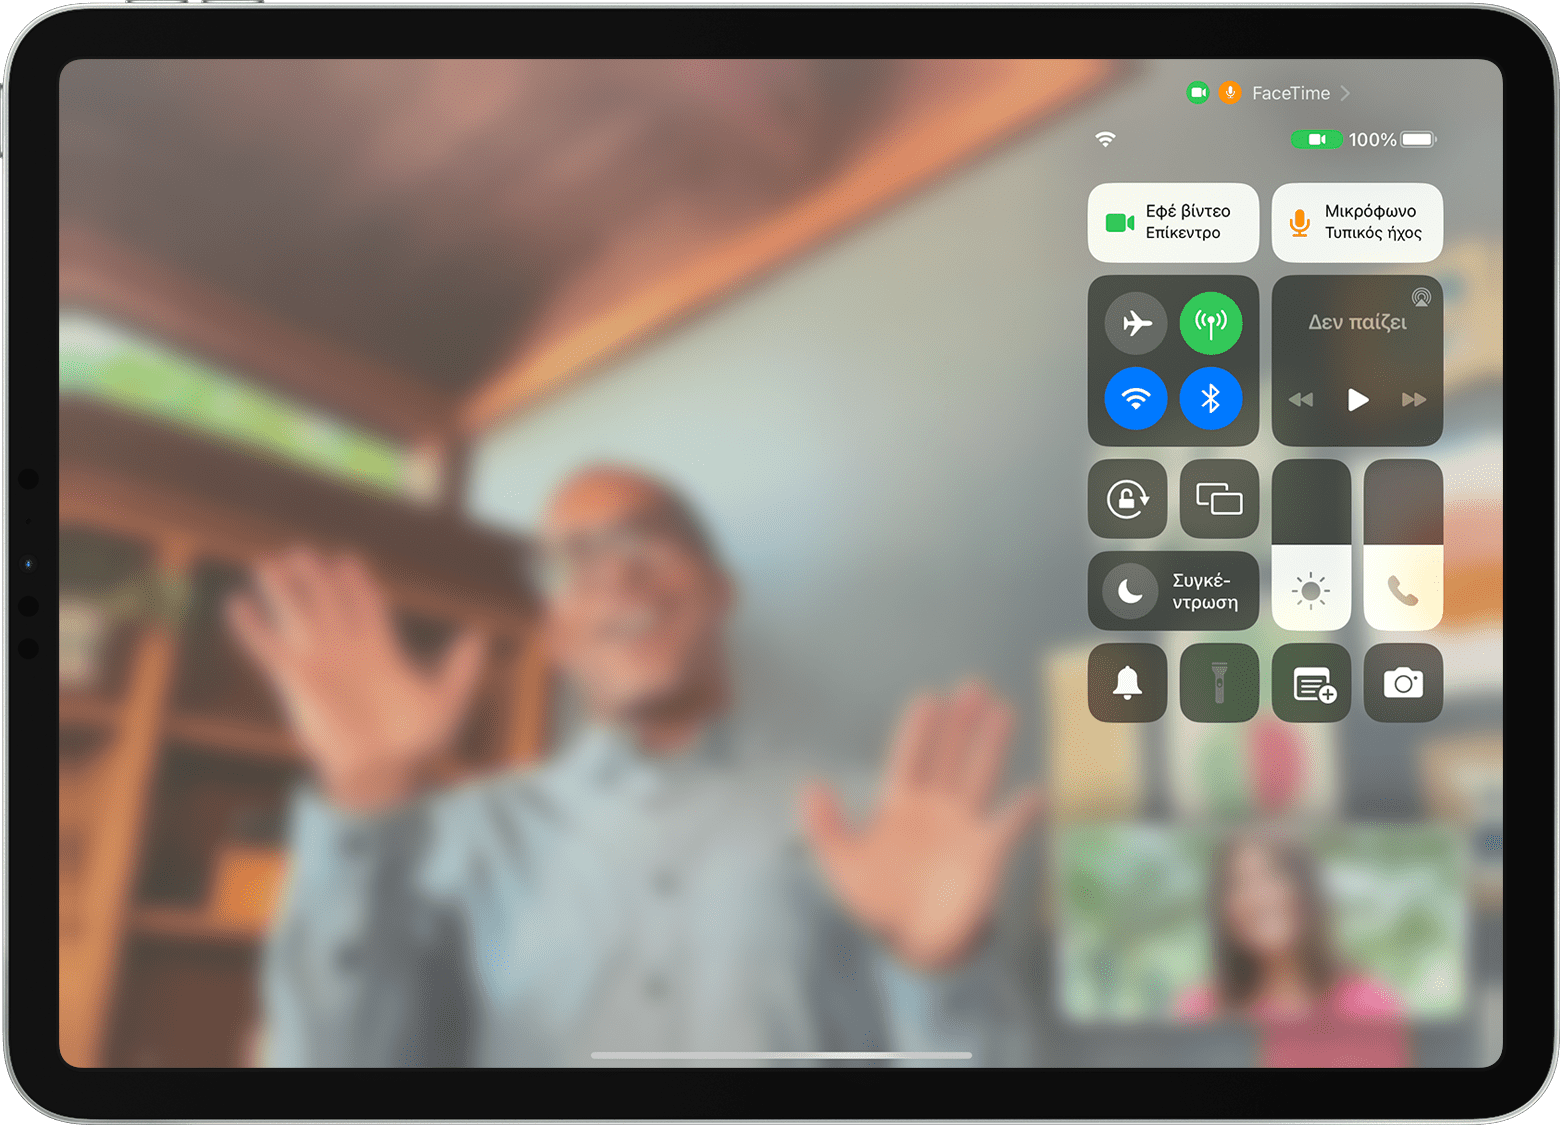 Οθόνη iPad που εμφανίζει μια κλήση FaceTime με ορατό το Κέντρο ελέγχου, συμπεριλαμβανομένου του κουμπιού «Εφέ βίντεο»